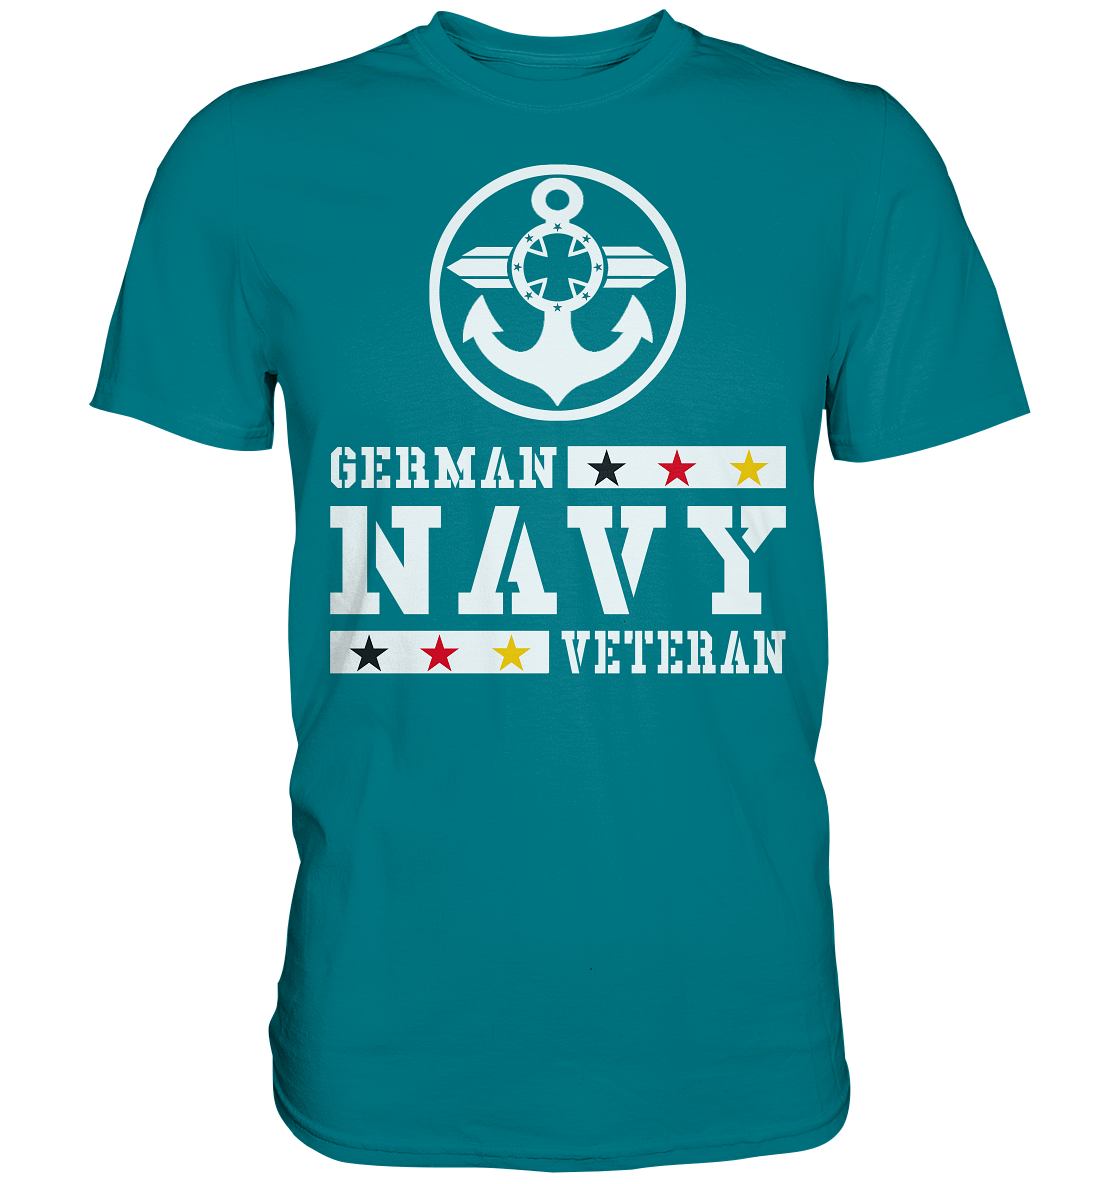 GERMAN NAVY VETERAN ANKER - Premium Shirt